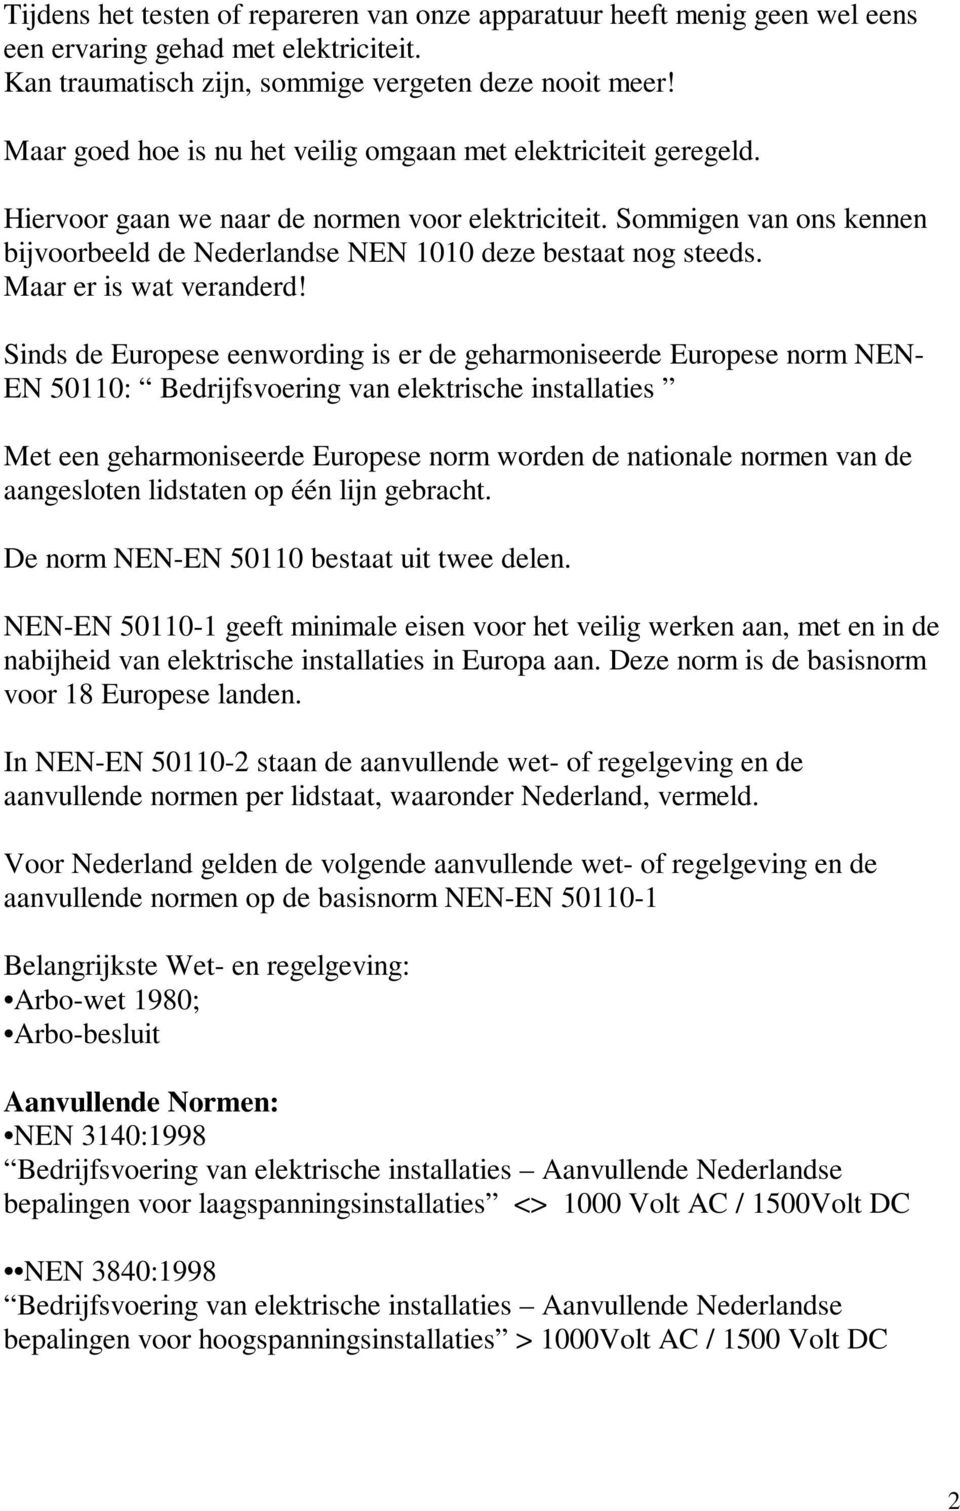 Sommigen van ons kennen bijvoorbeeld de Nederlandse NEN 1010 deze bestaat nog steeds. Maar er is wat veranderd!